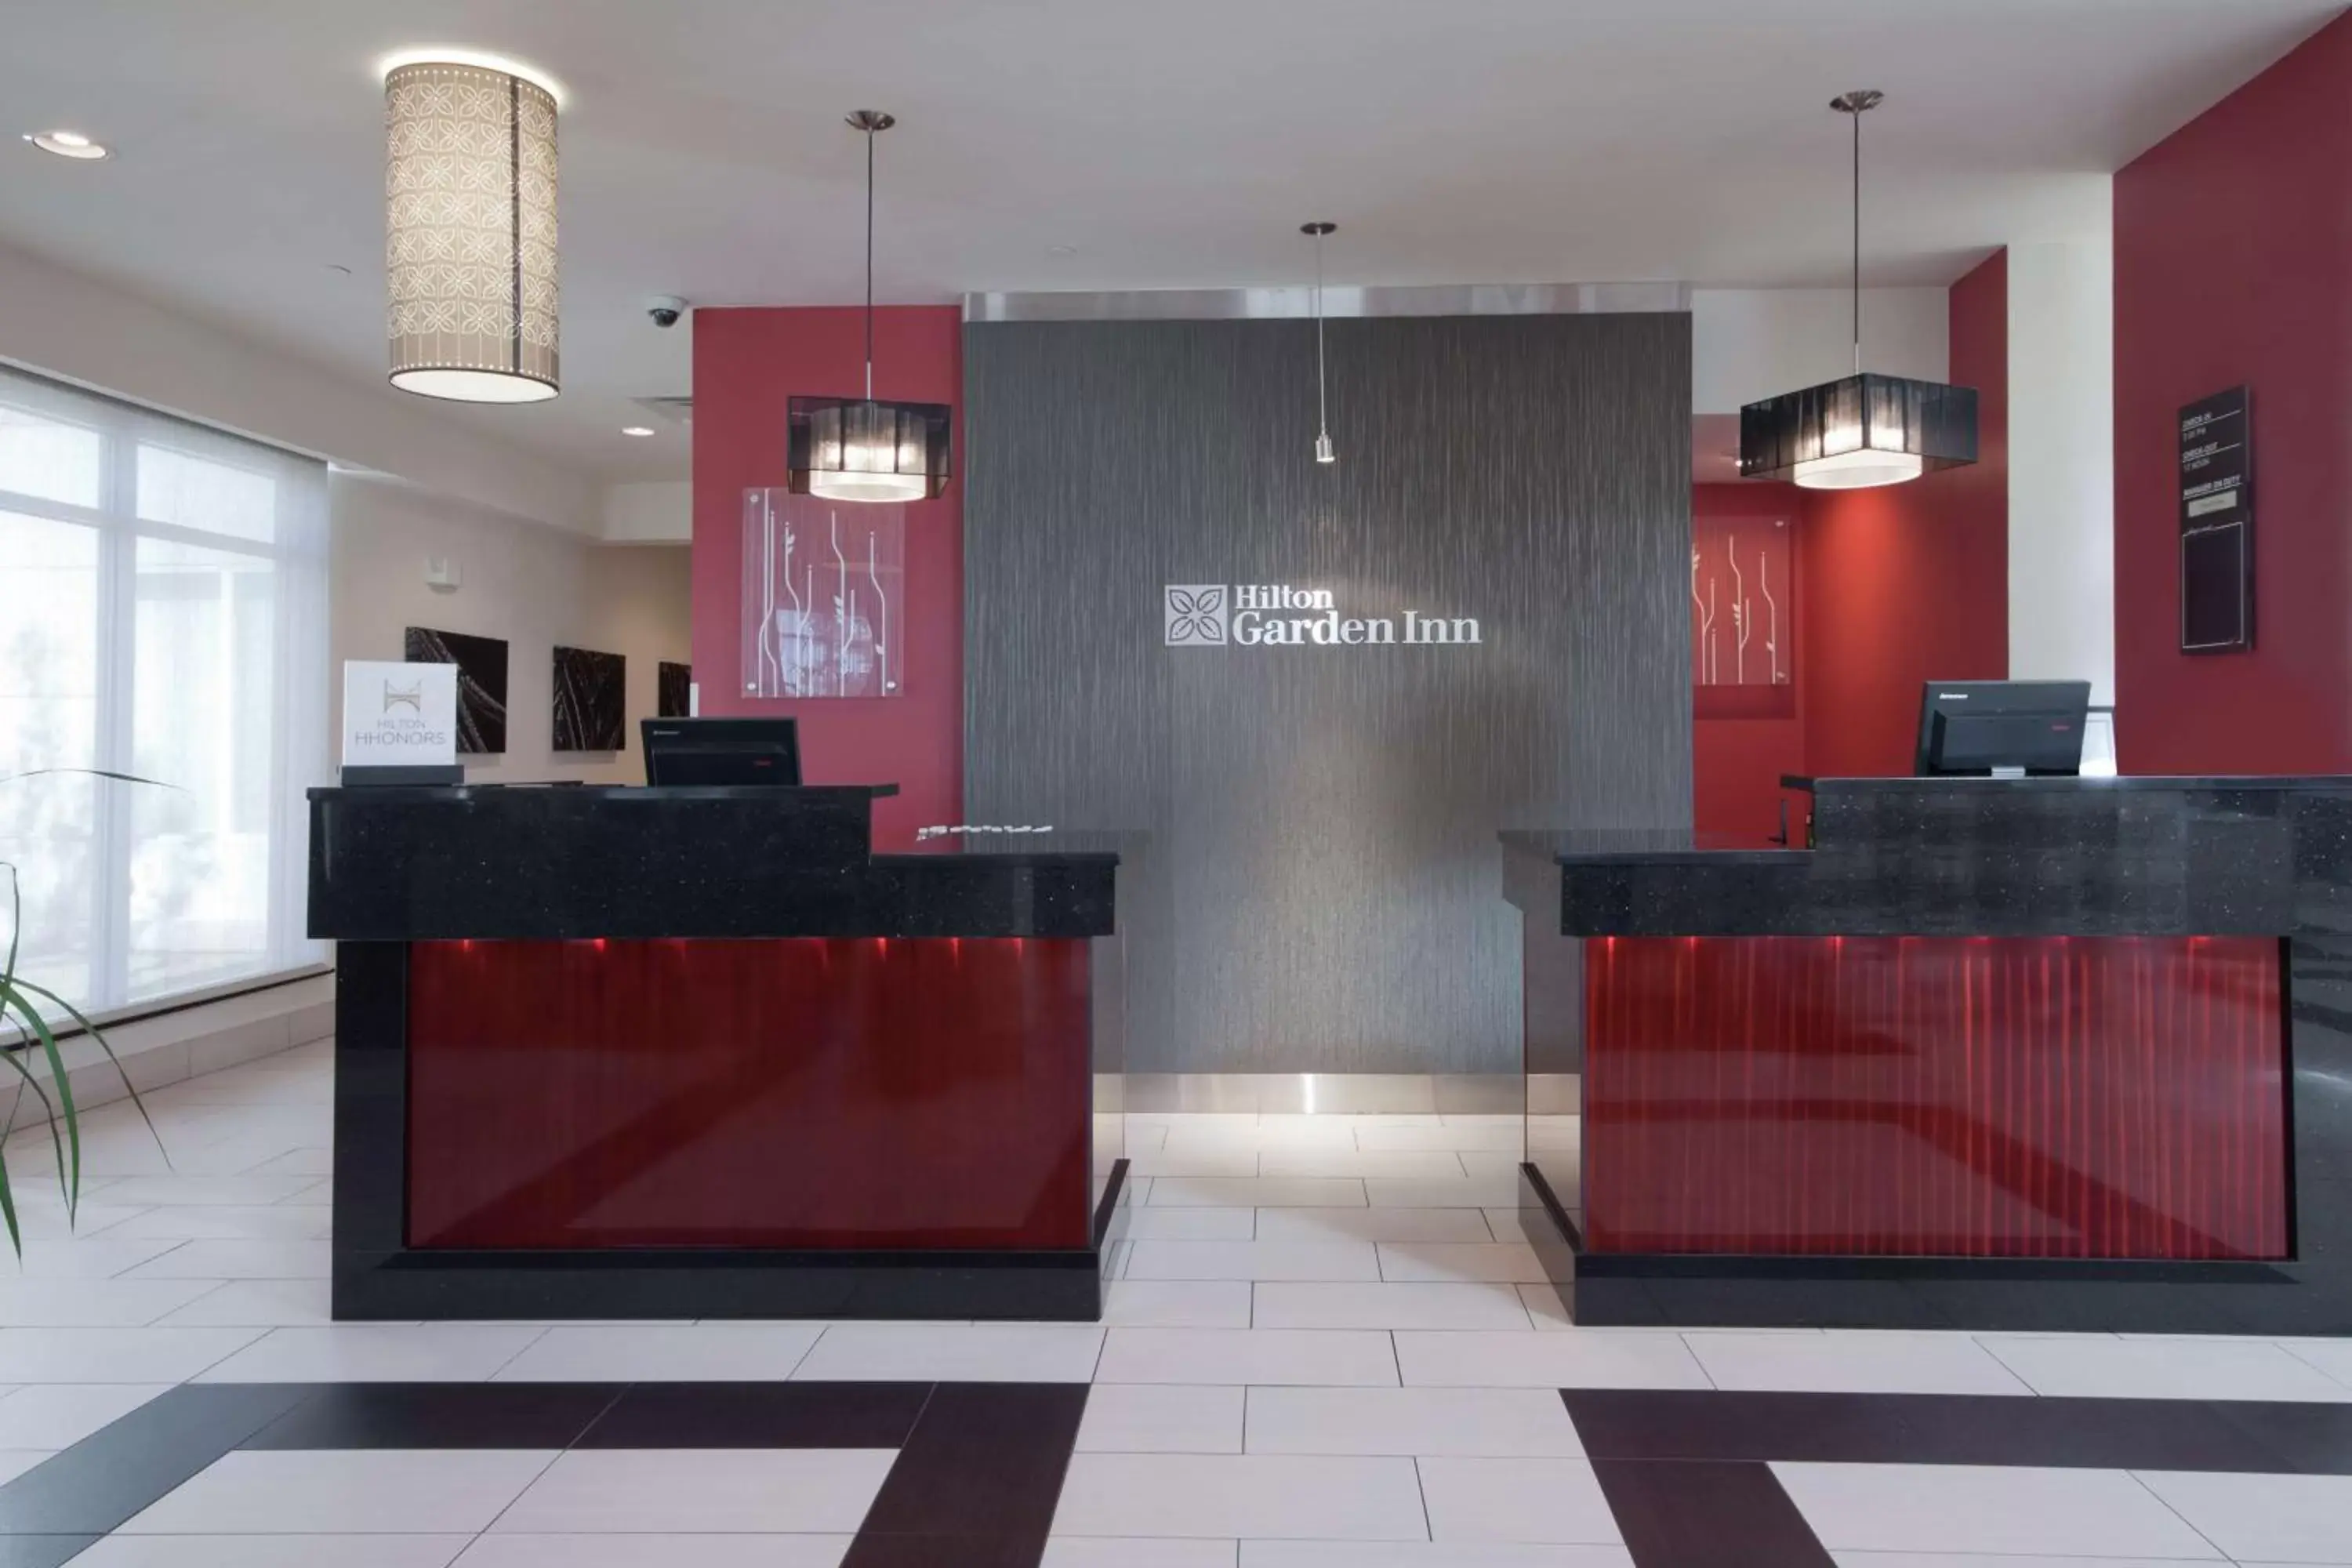 Lobby or reception, Lobby/Reception in Hilton Garden Inn Oklahoma City Midtown